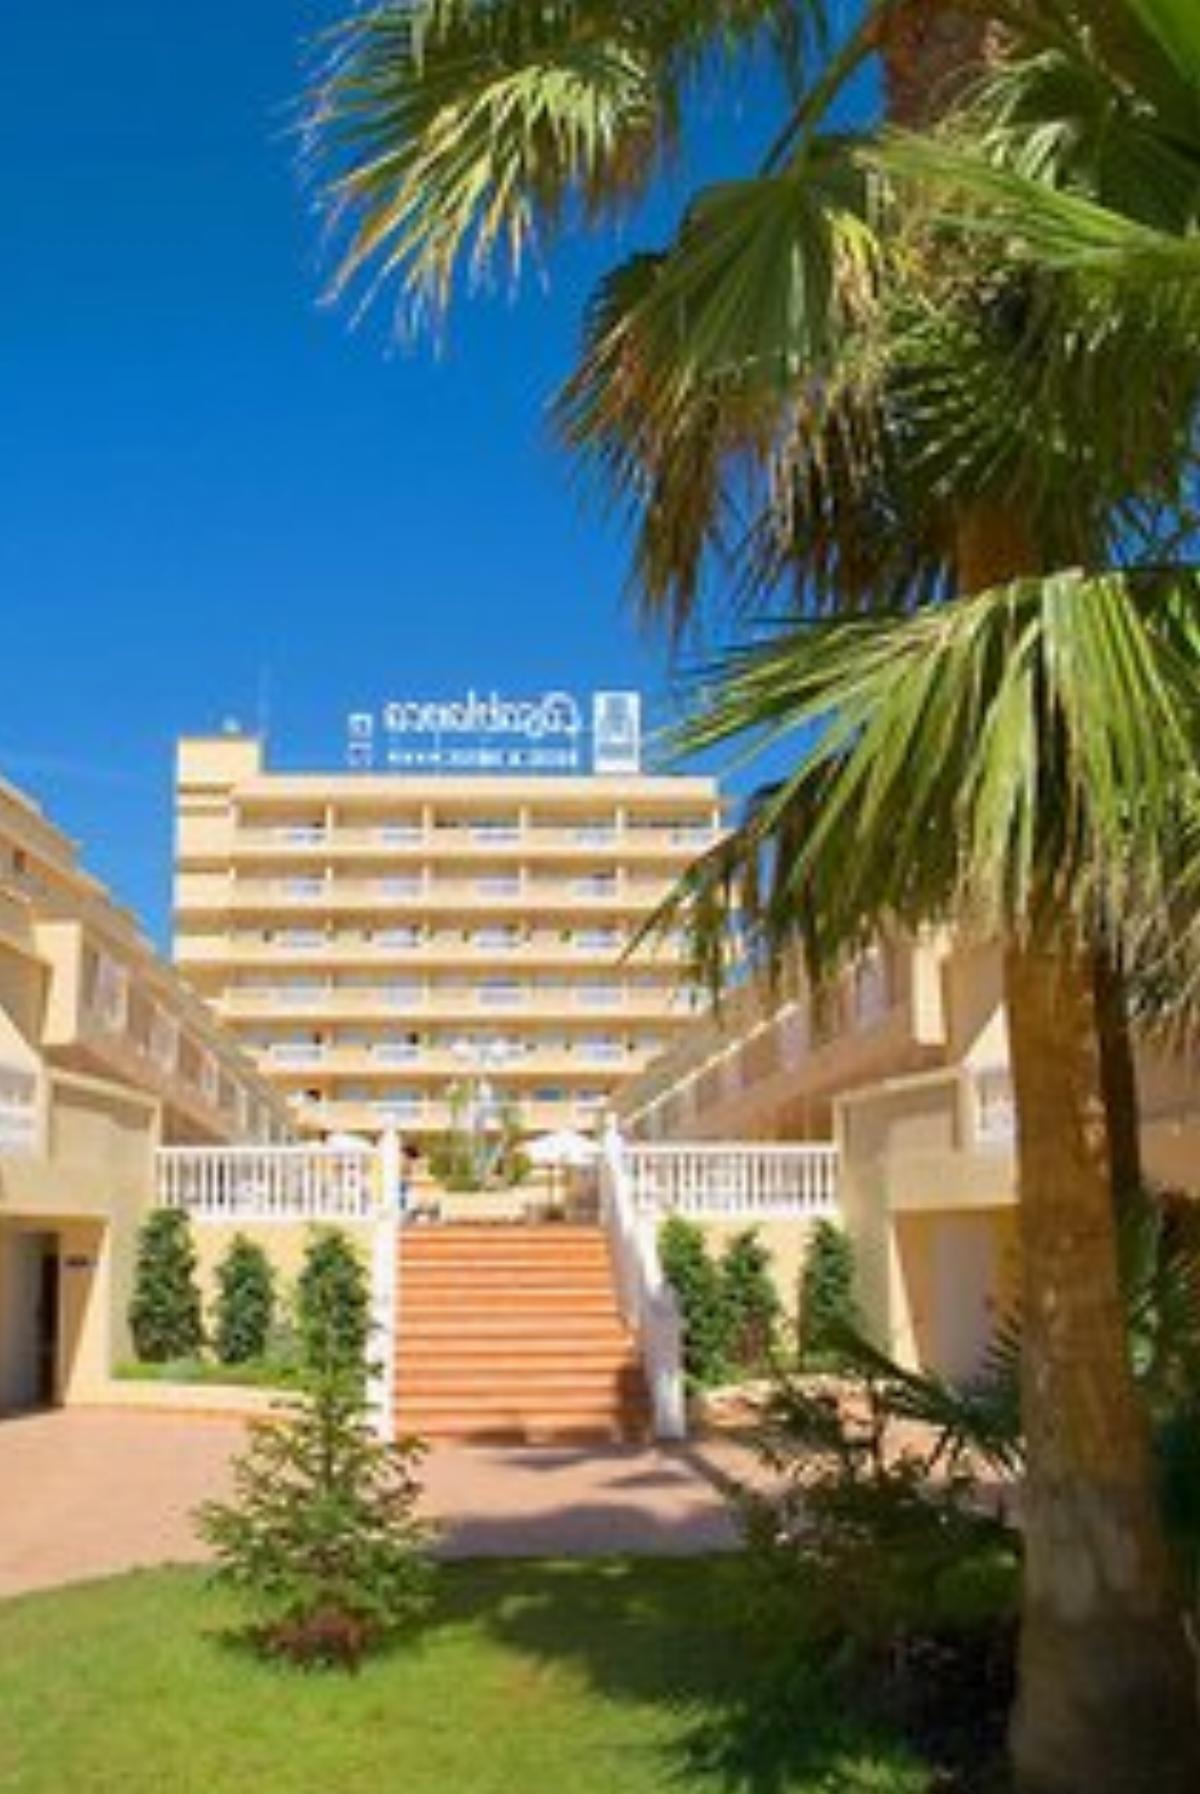 Rh Casablanca Suites Hotel Costa De Azahar Spain